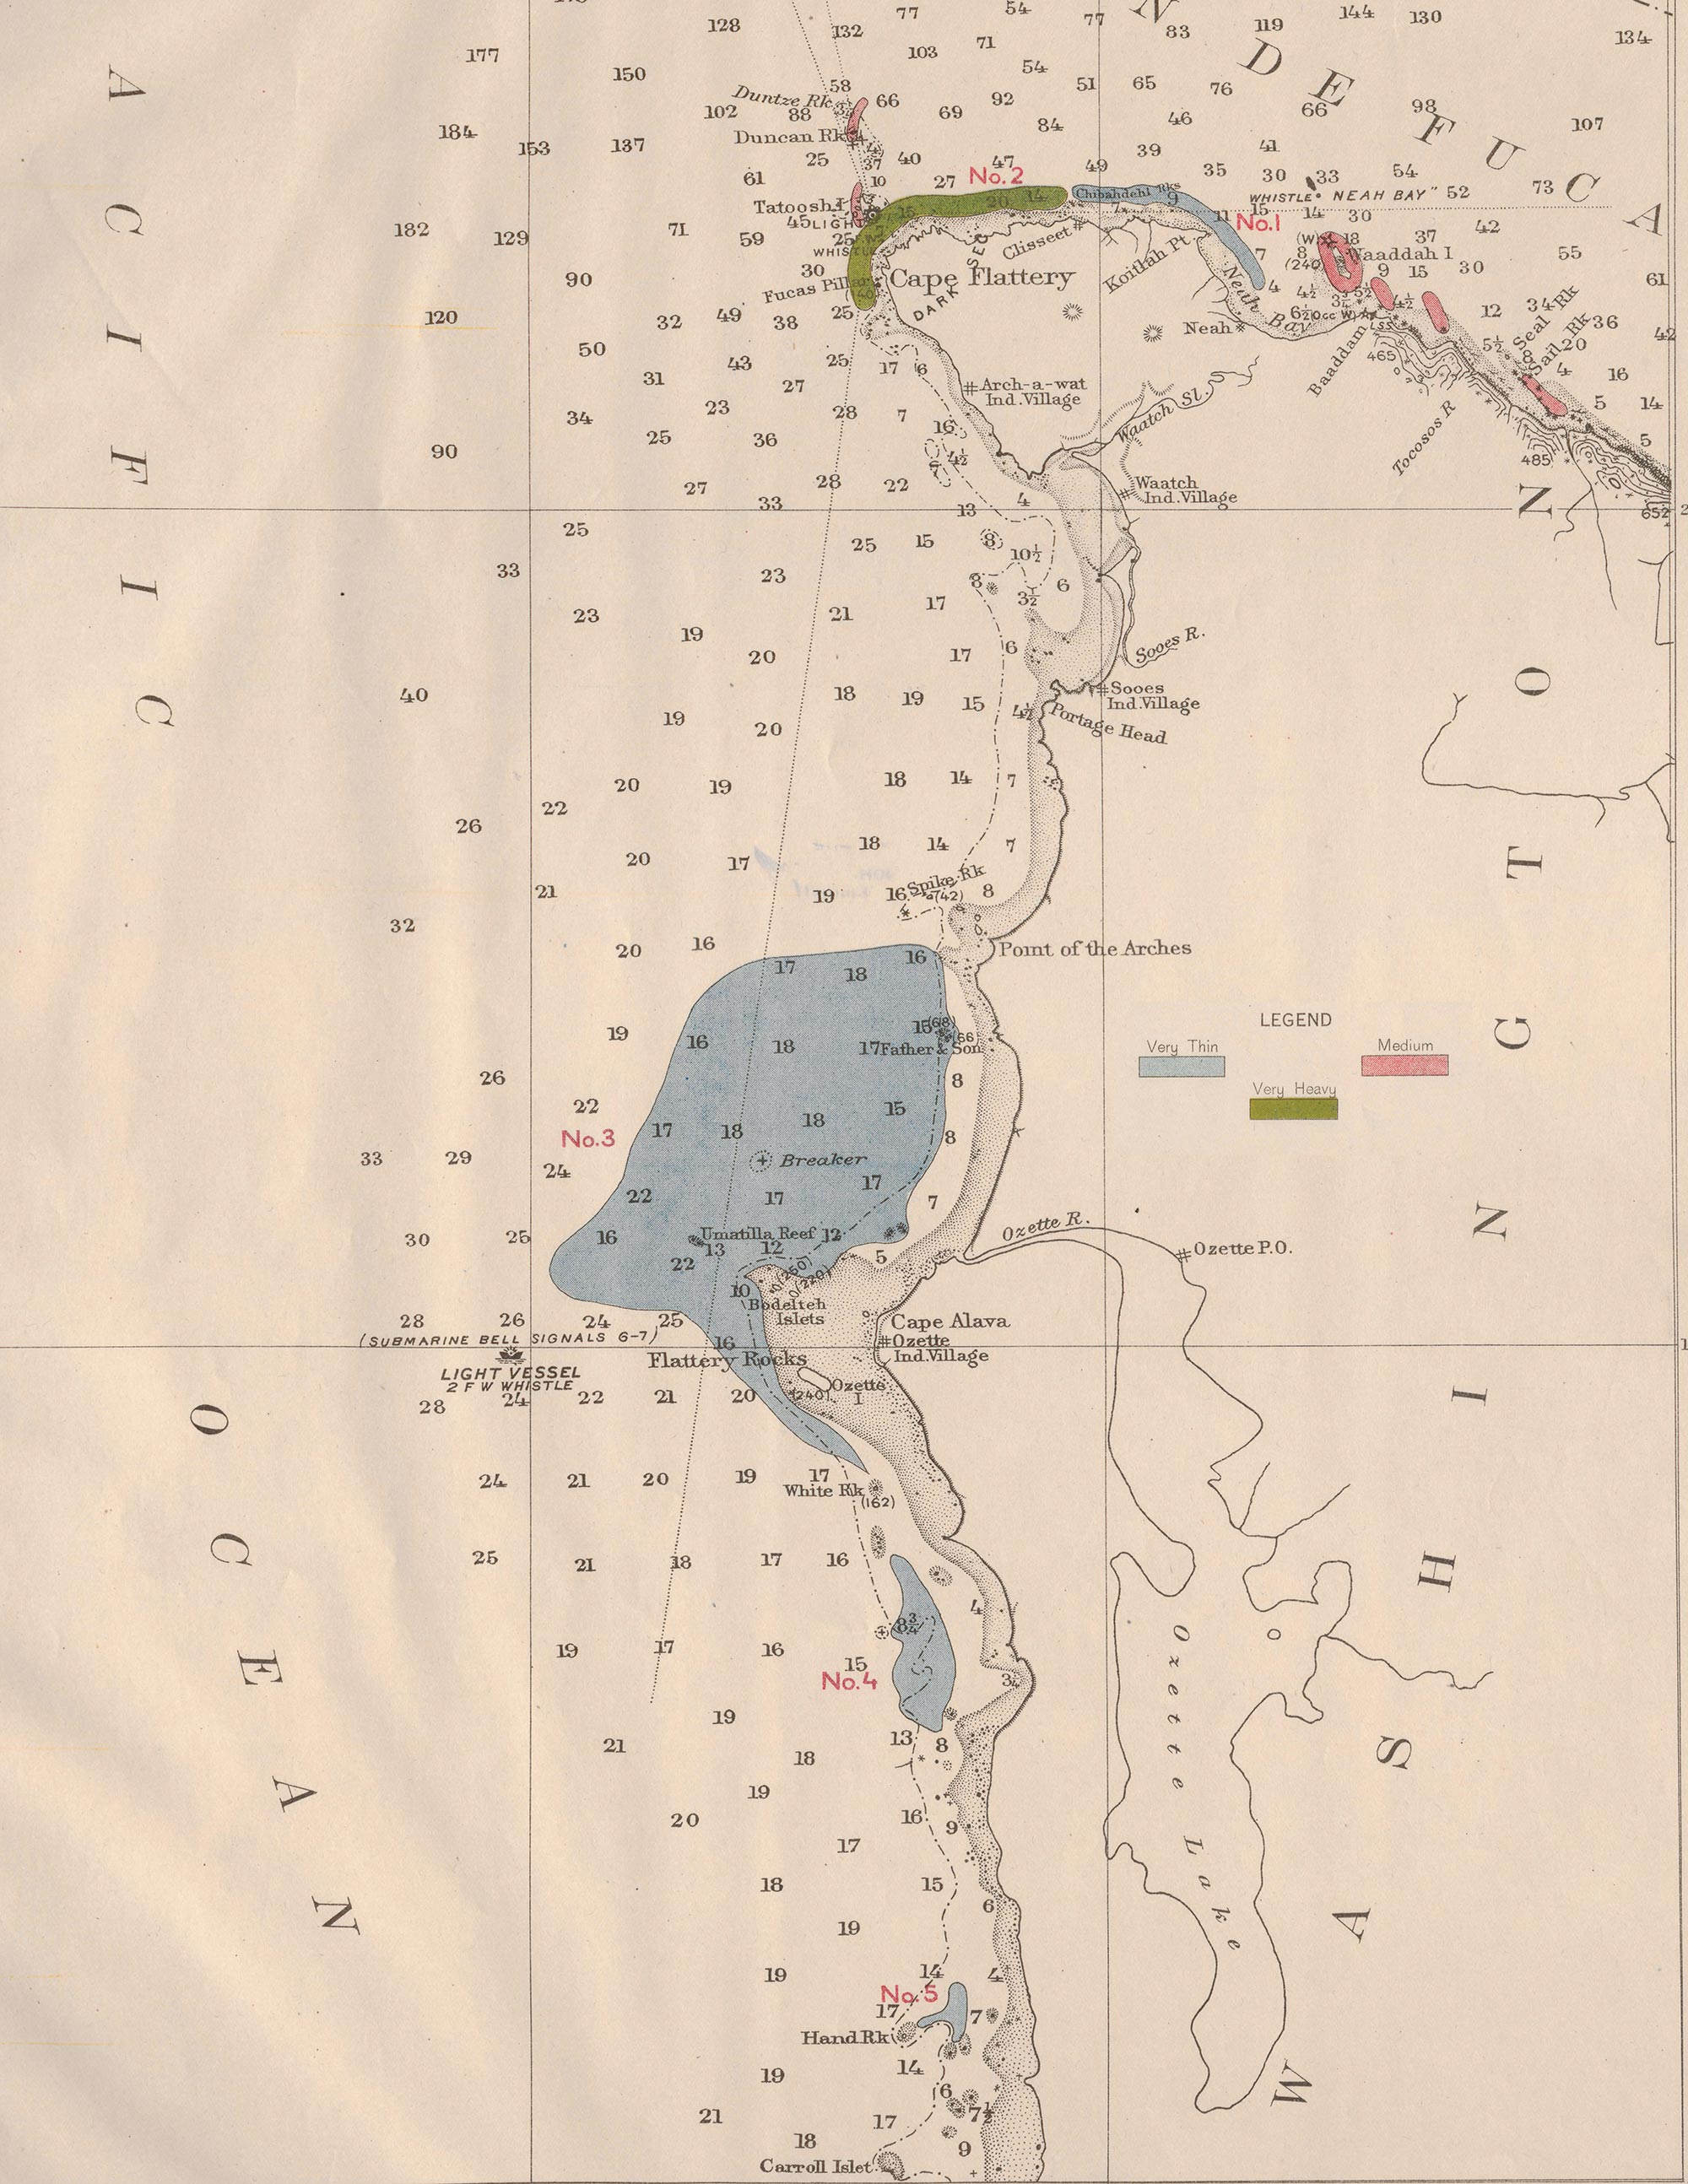 1912 kelp bed survey map of the Washington Coast